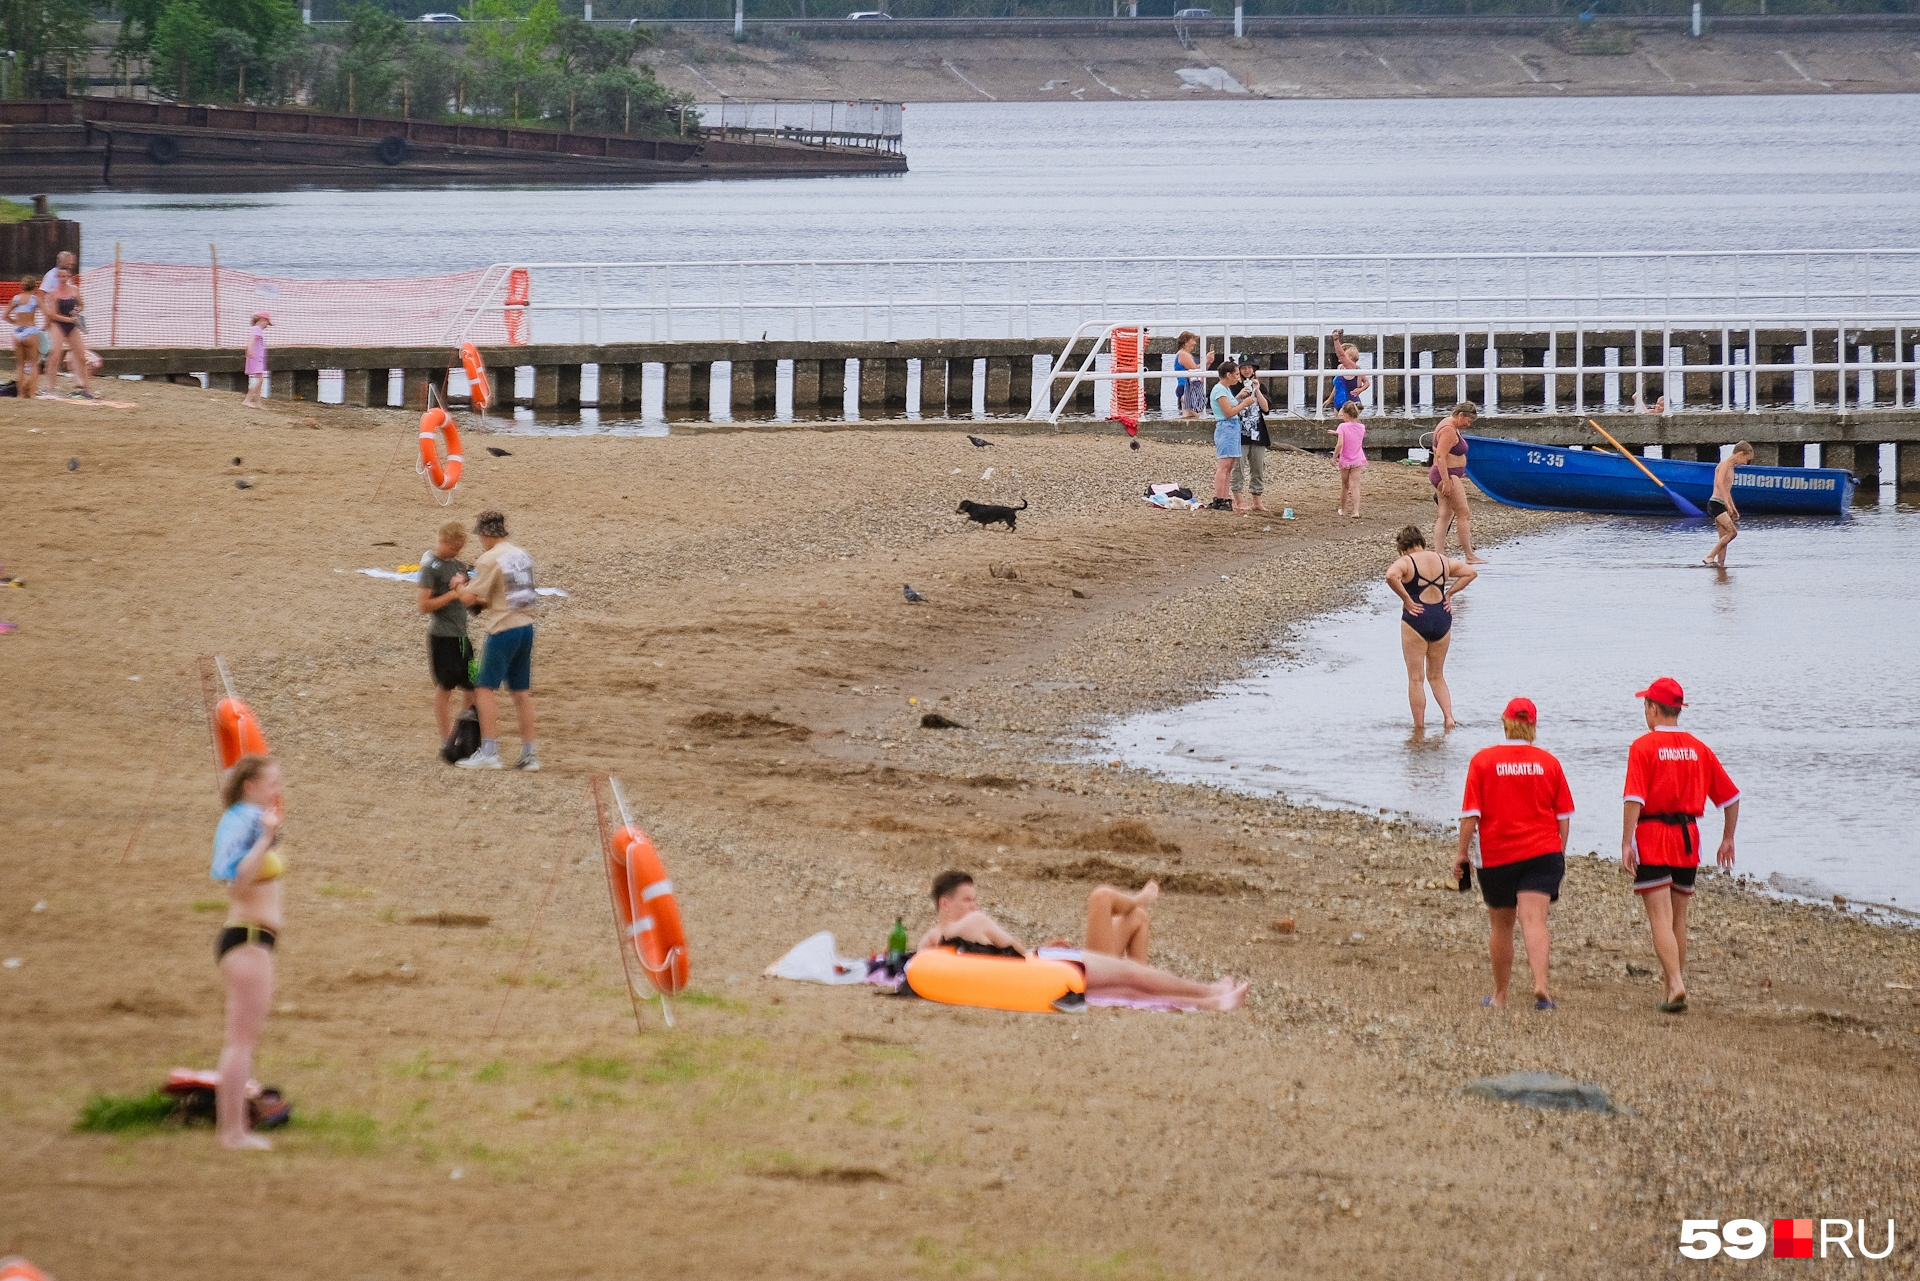 Обратите внимание: на пляже работают спасатели (и такса)